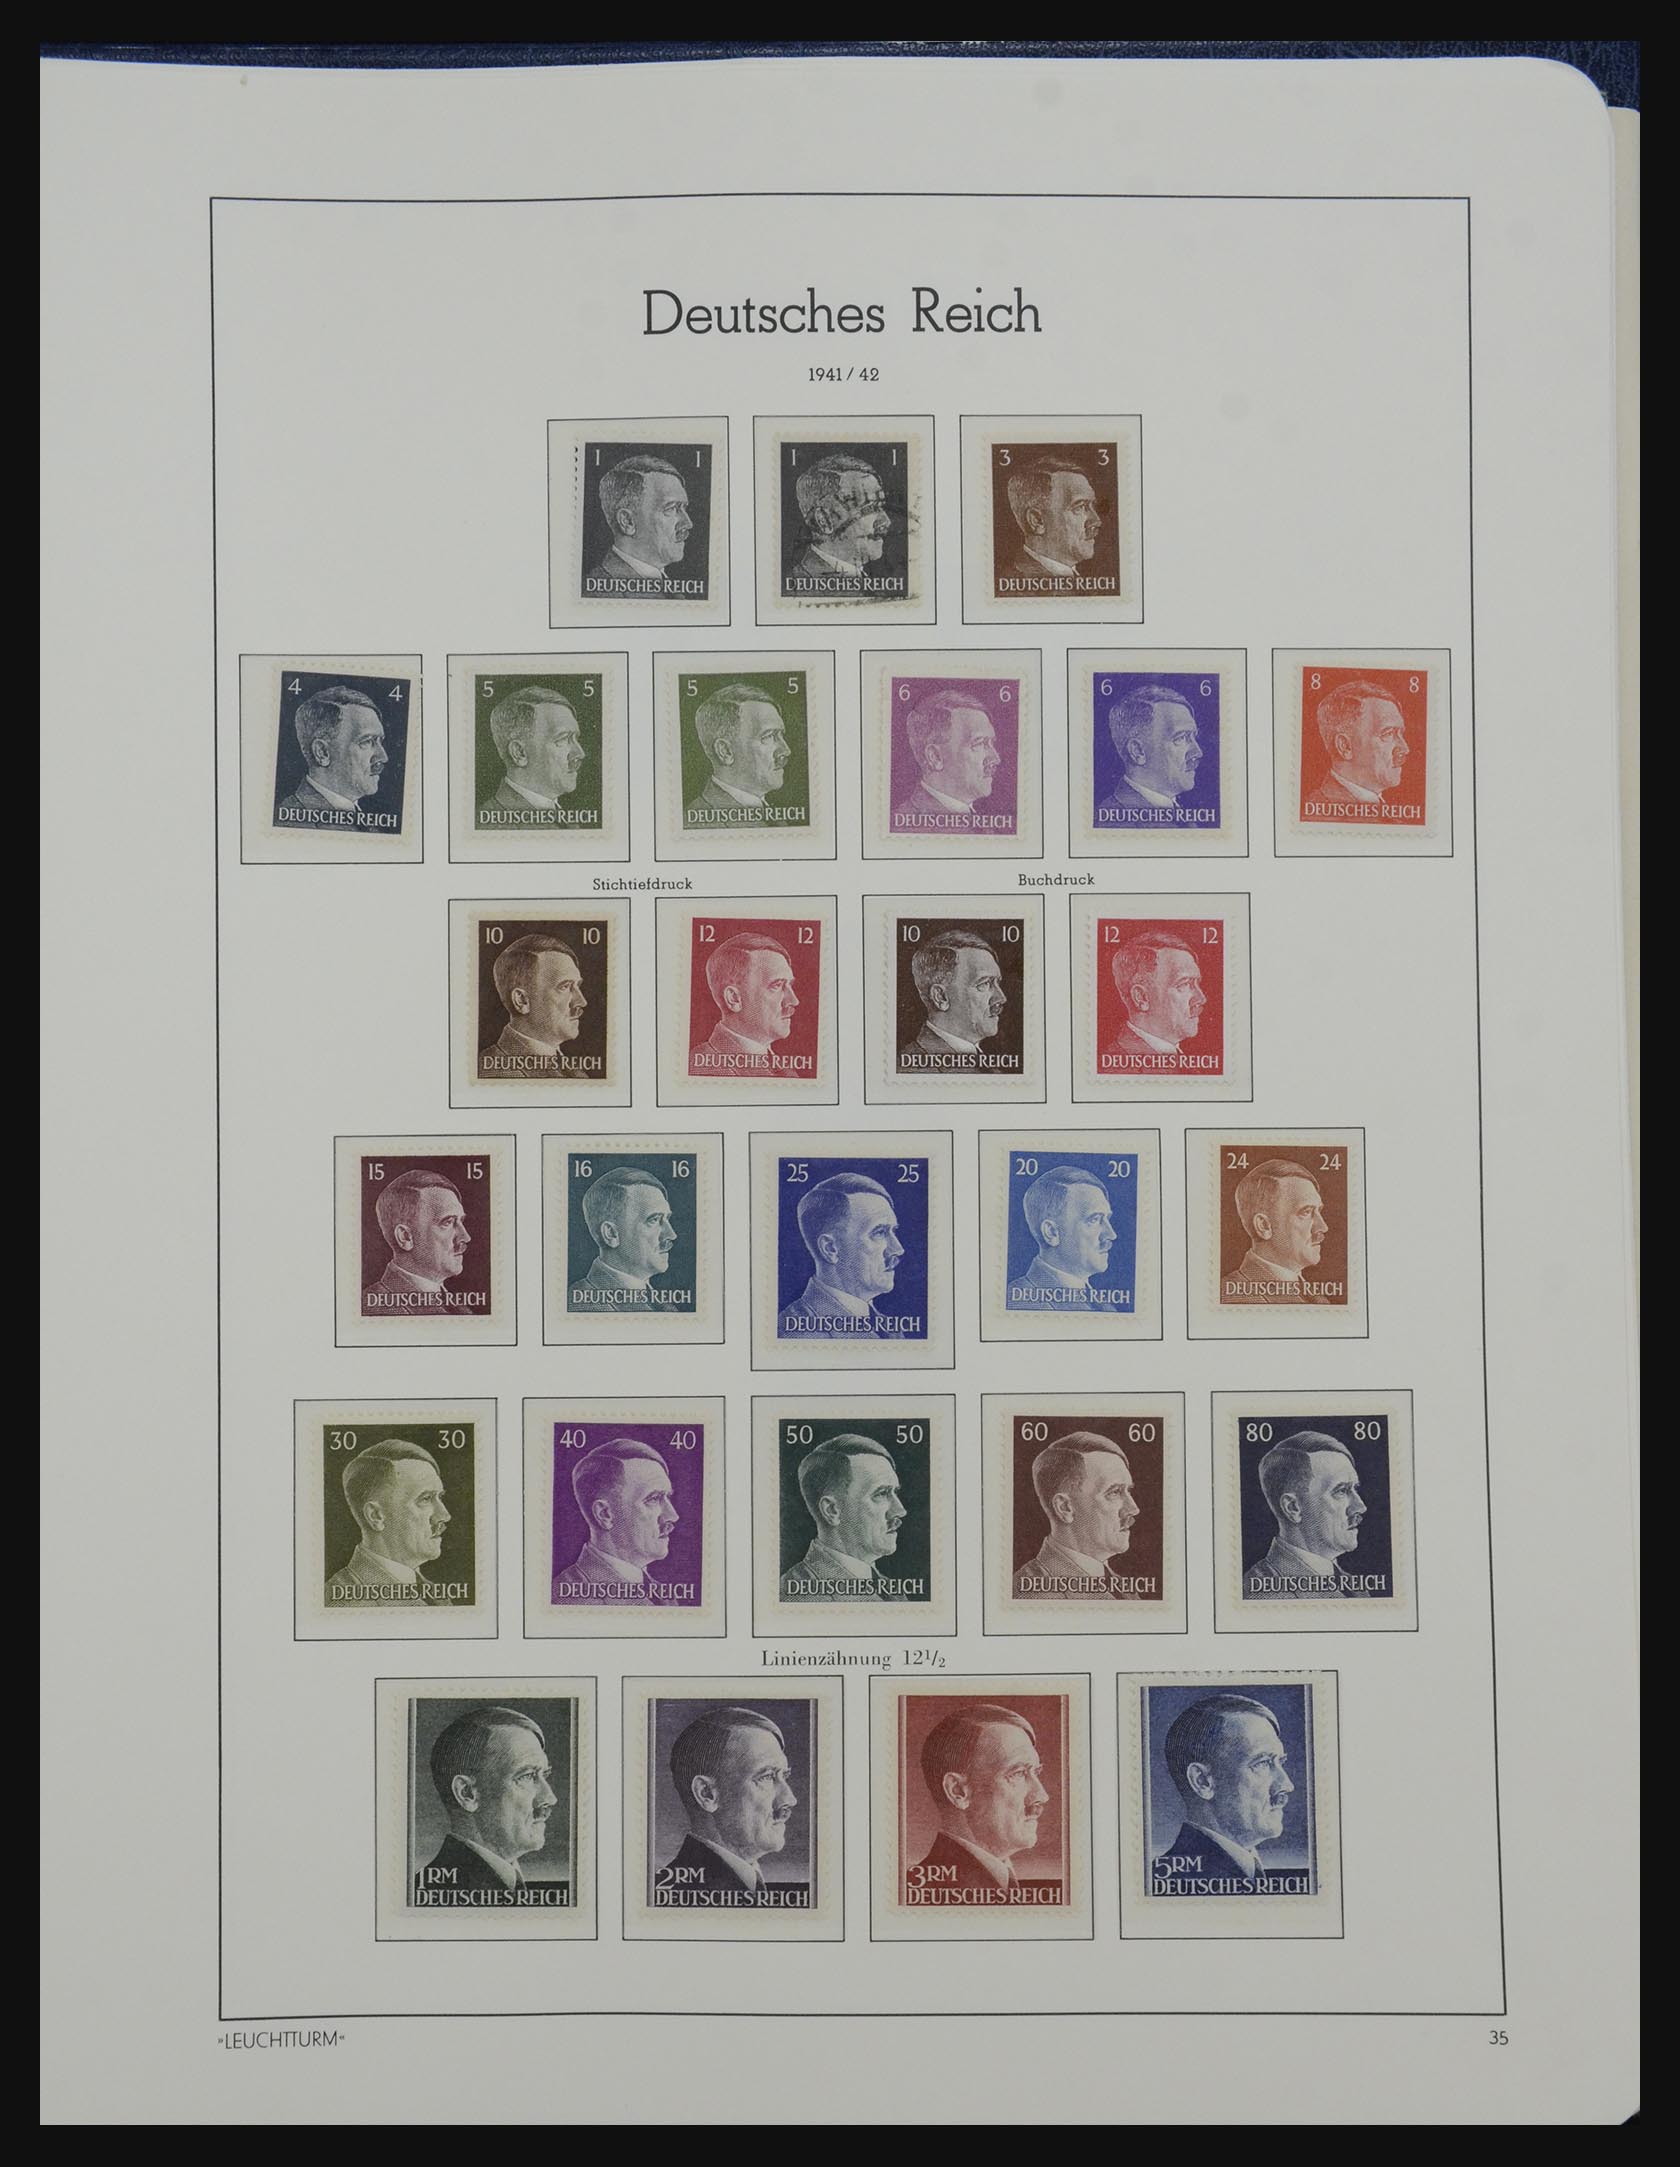 32190 168 - 32190 German Reich 1872-1945.